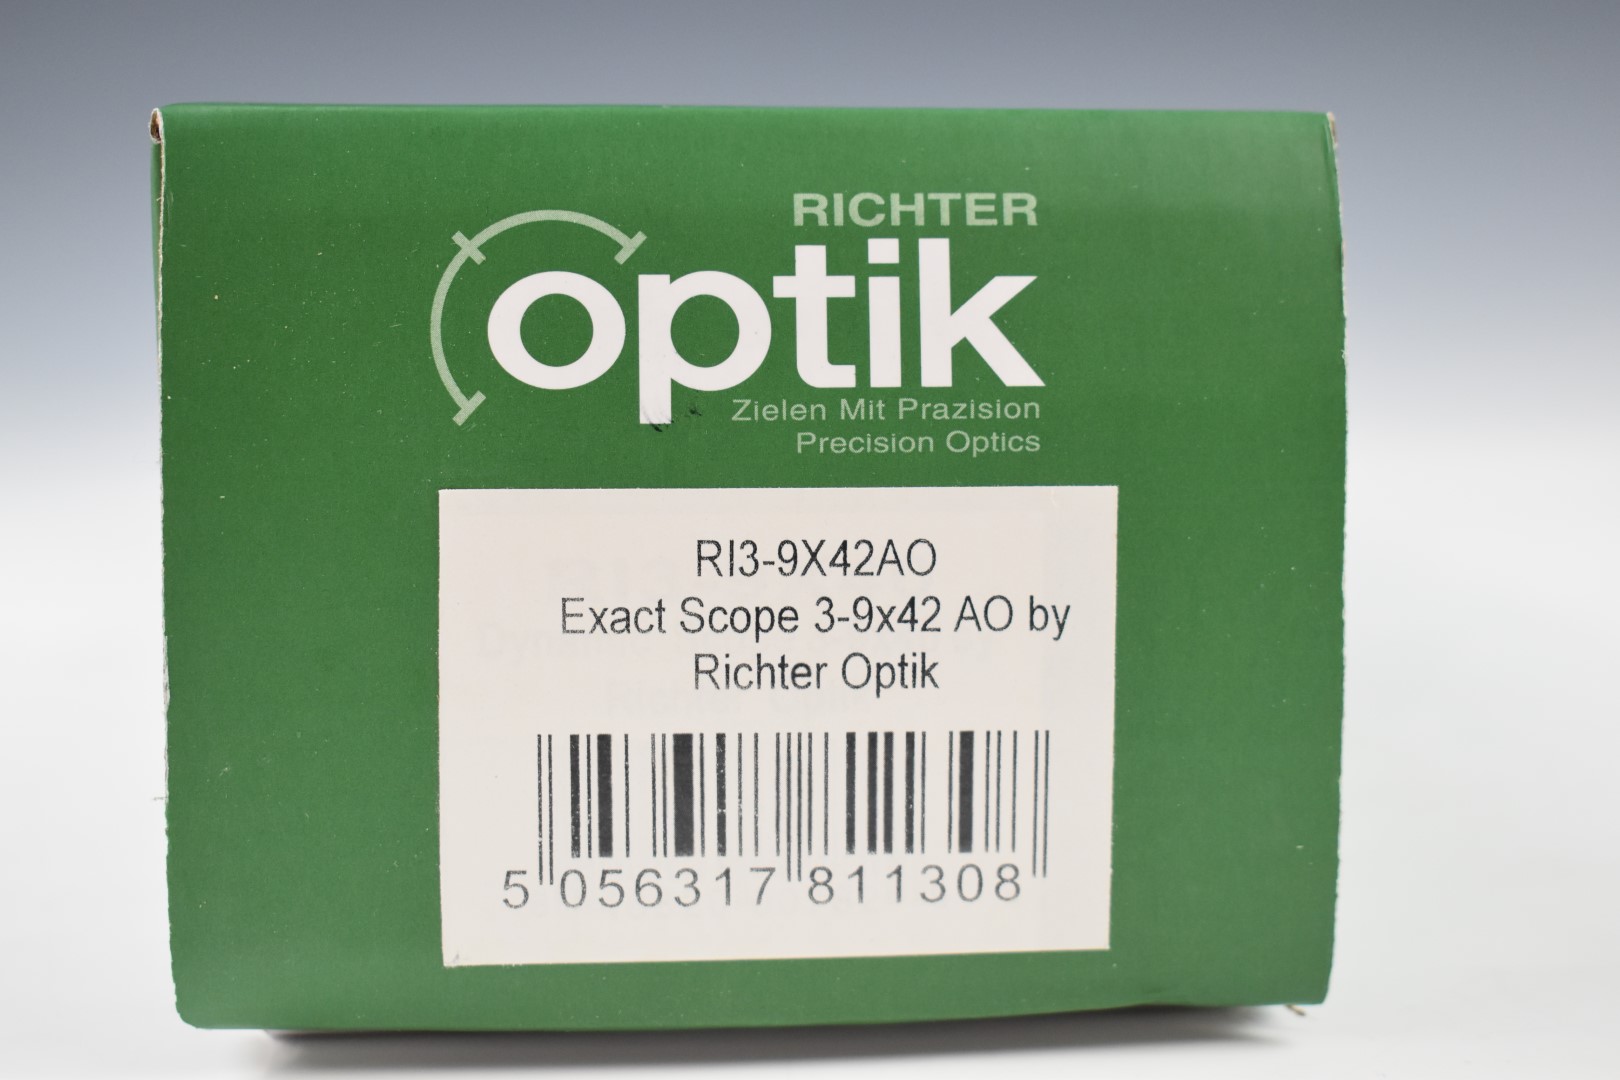 Richter Optik R13-9x42 AO air rifle or similar scope, in original box - Image 8 of 8